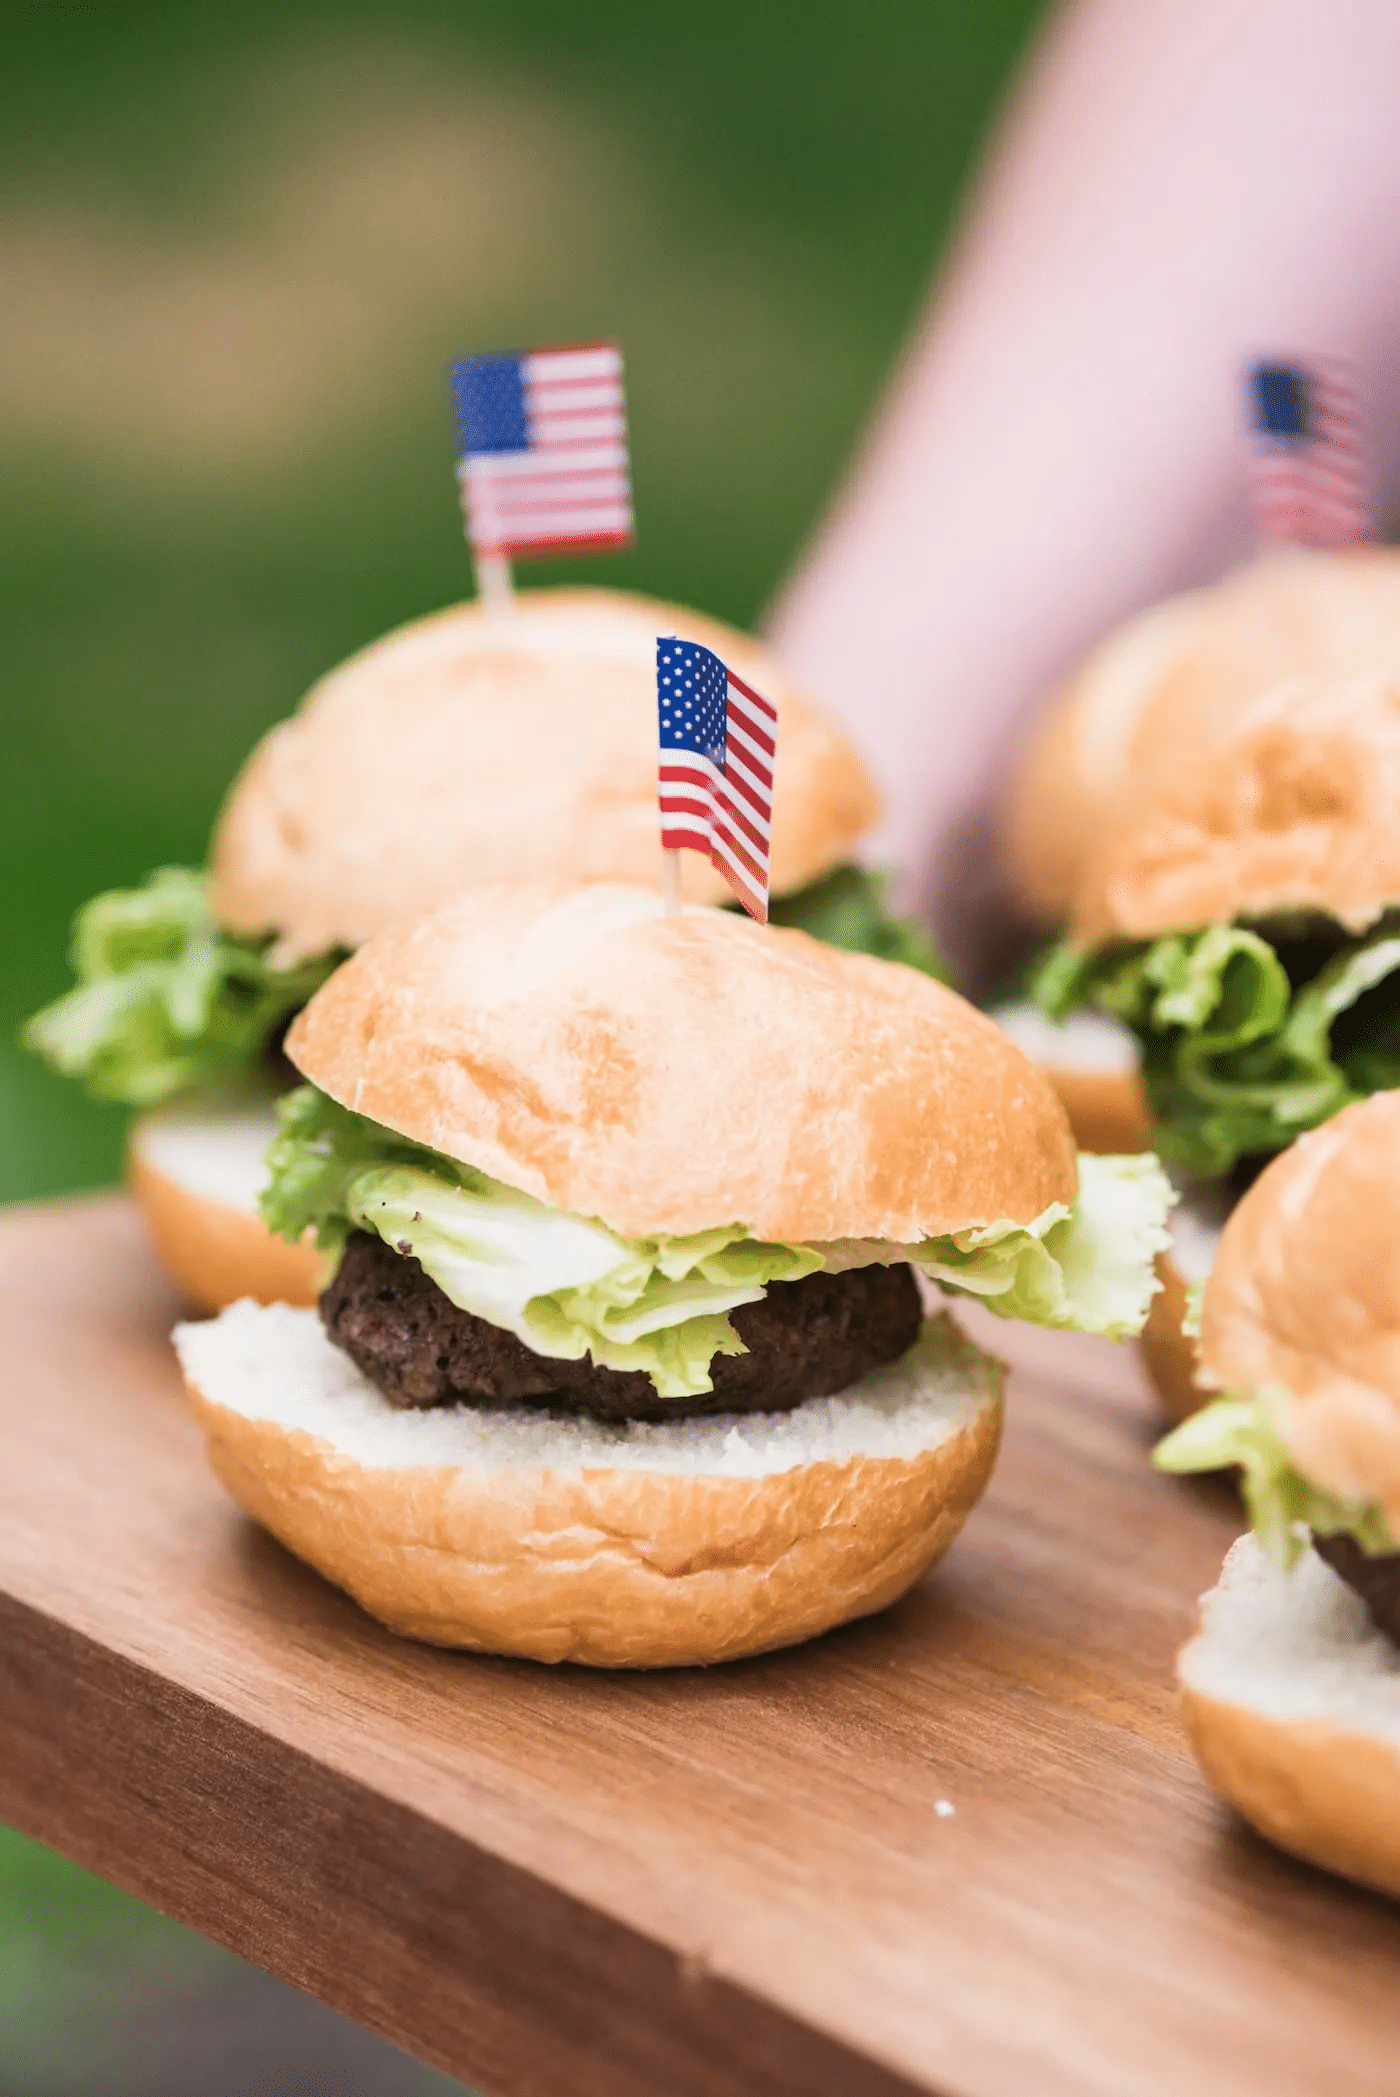 Burger with USA flag